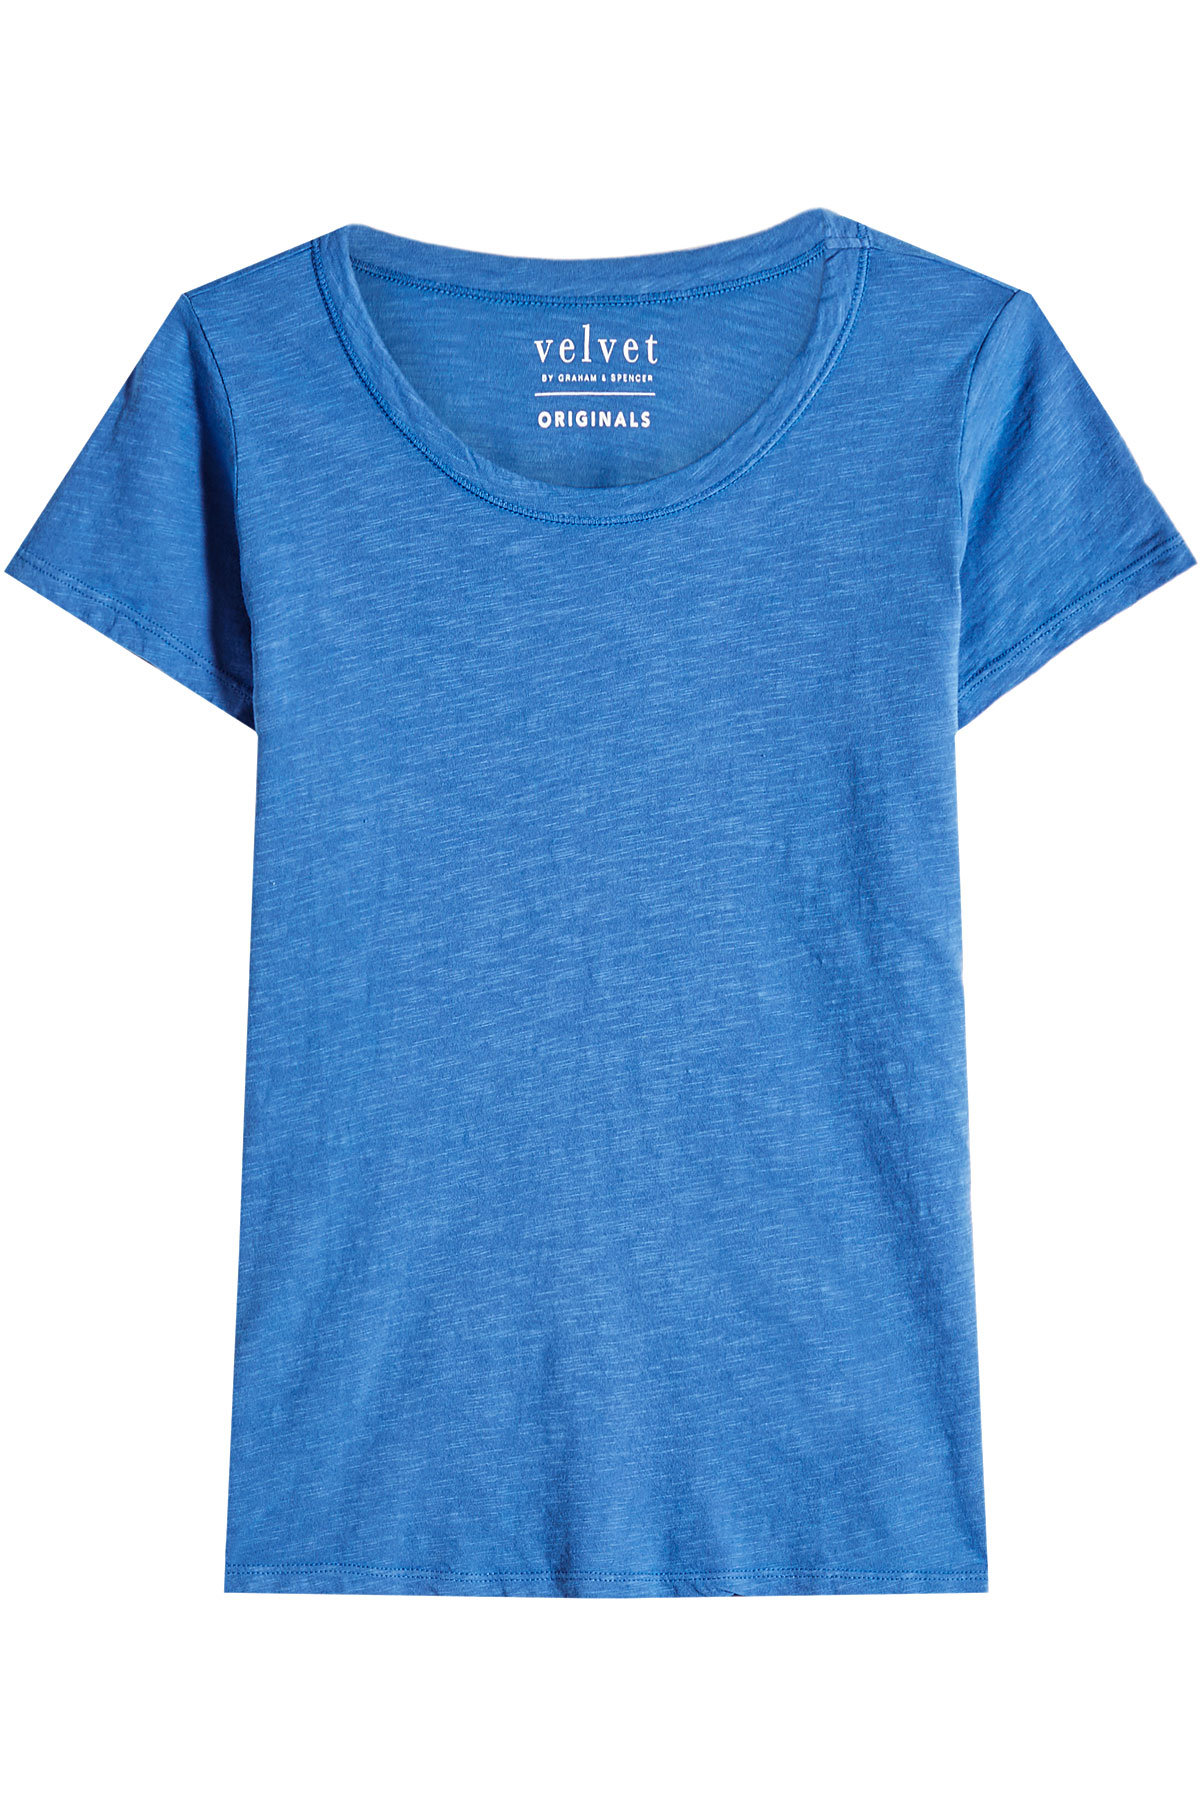 Velvet - Tilly Cotton T-Shirt